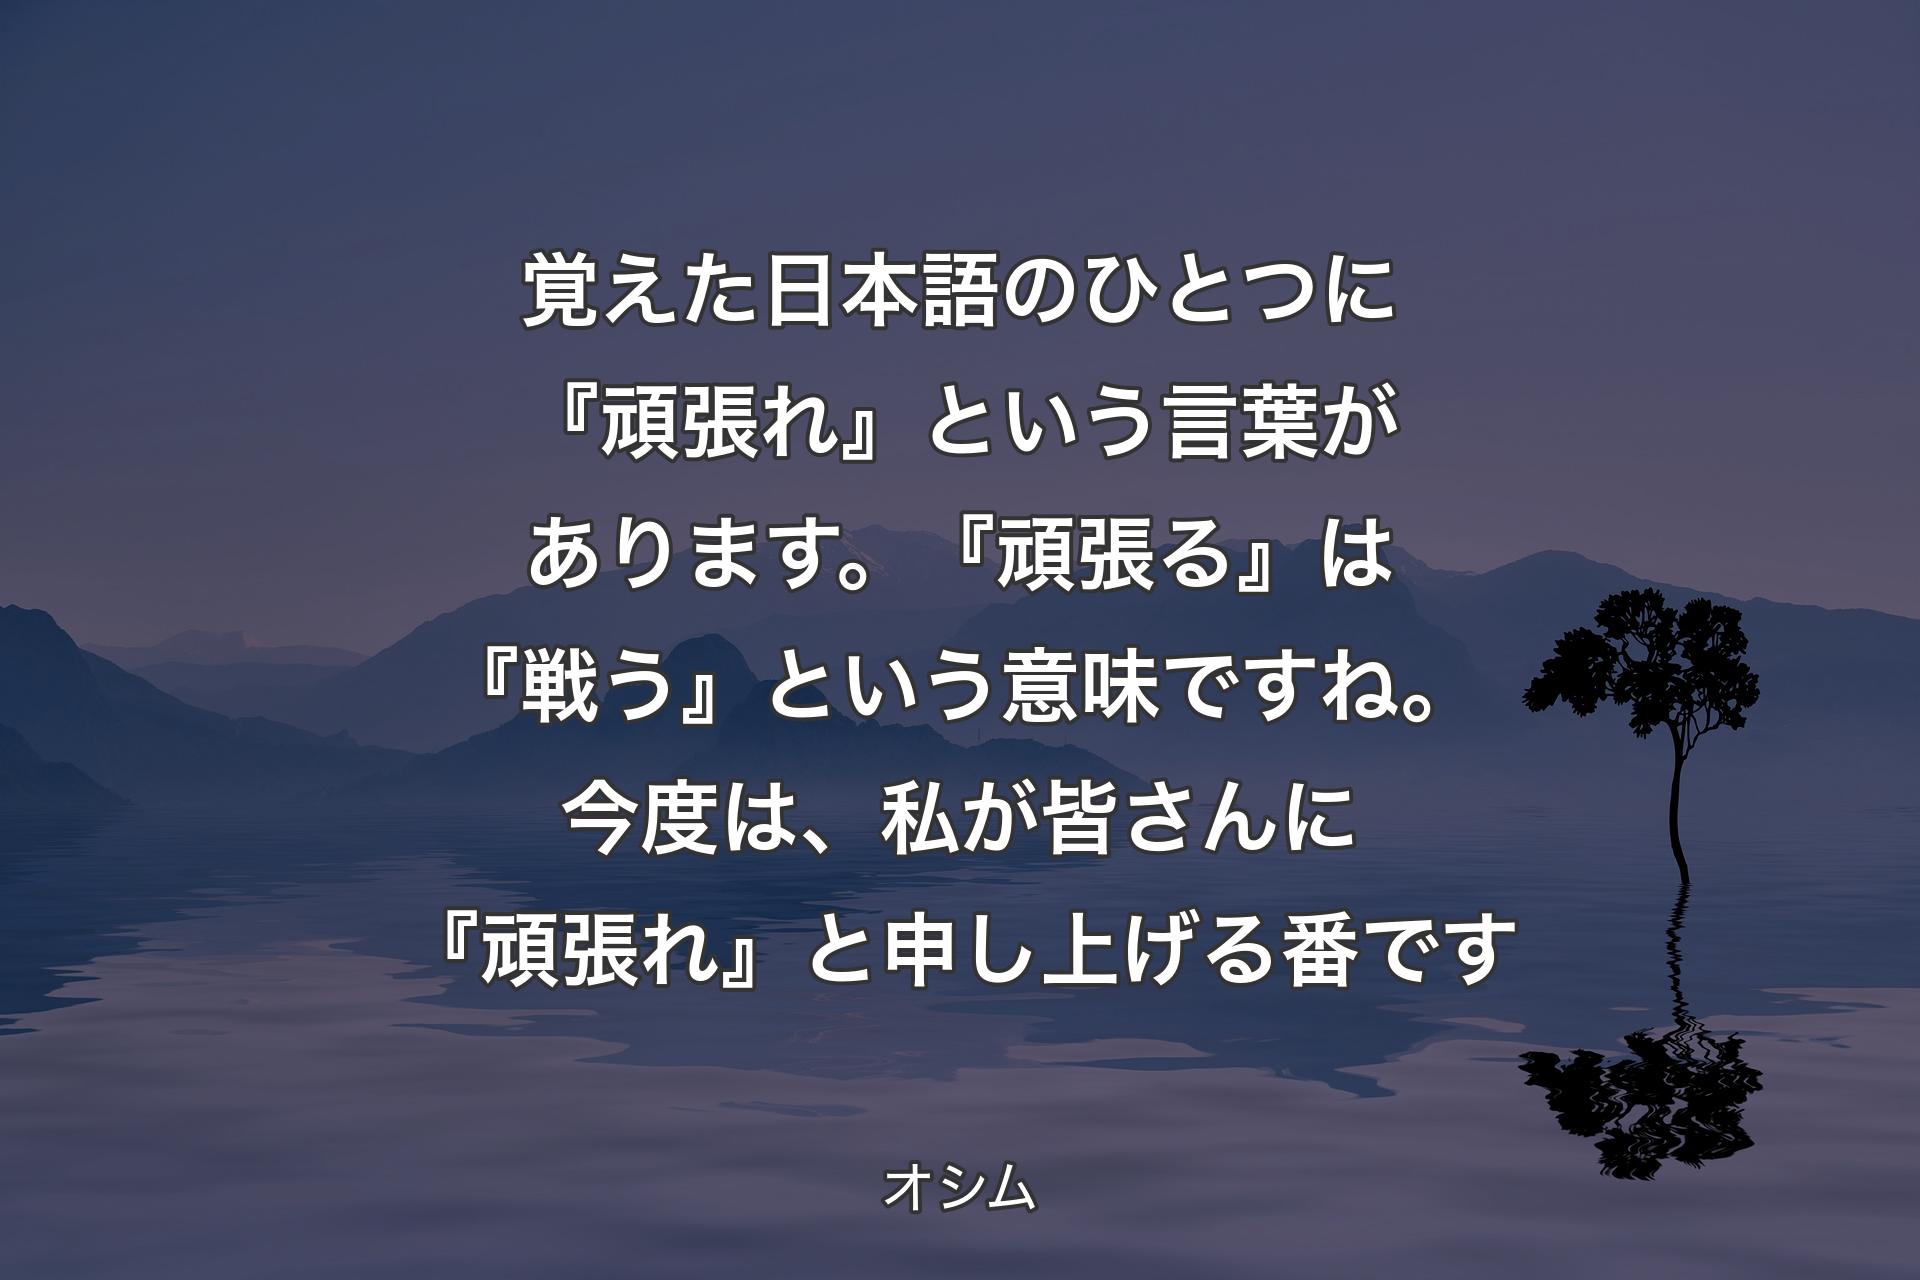 【背景4】覚えた日本語のひとつに『頑張れ』という言葉があります。『頑張る』は『戦う』という意味ですね。今度は、私が皆さんに『頑張れ』と申し上げる番です - オシム